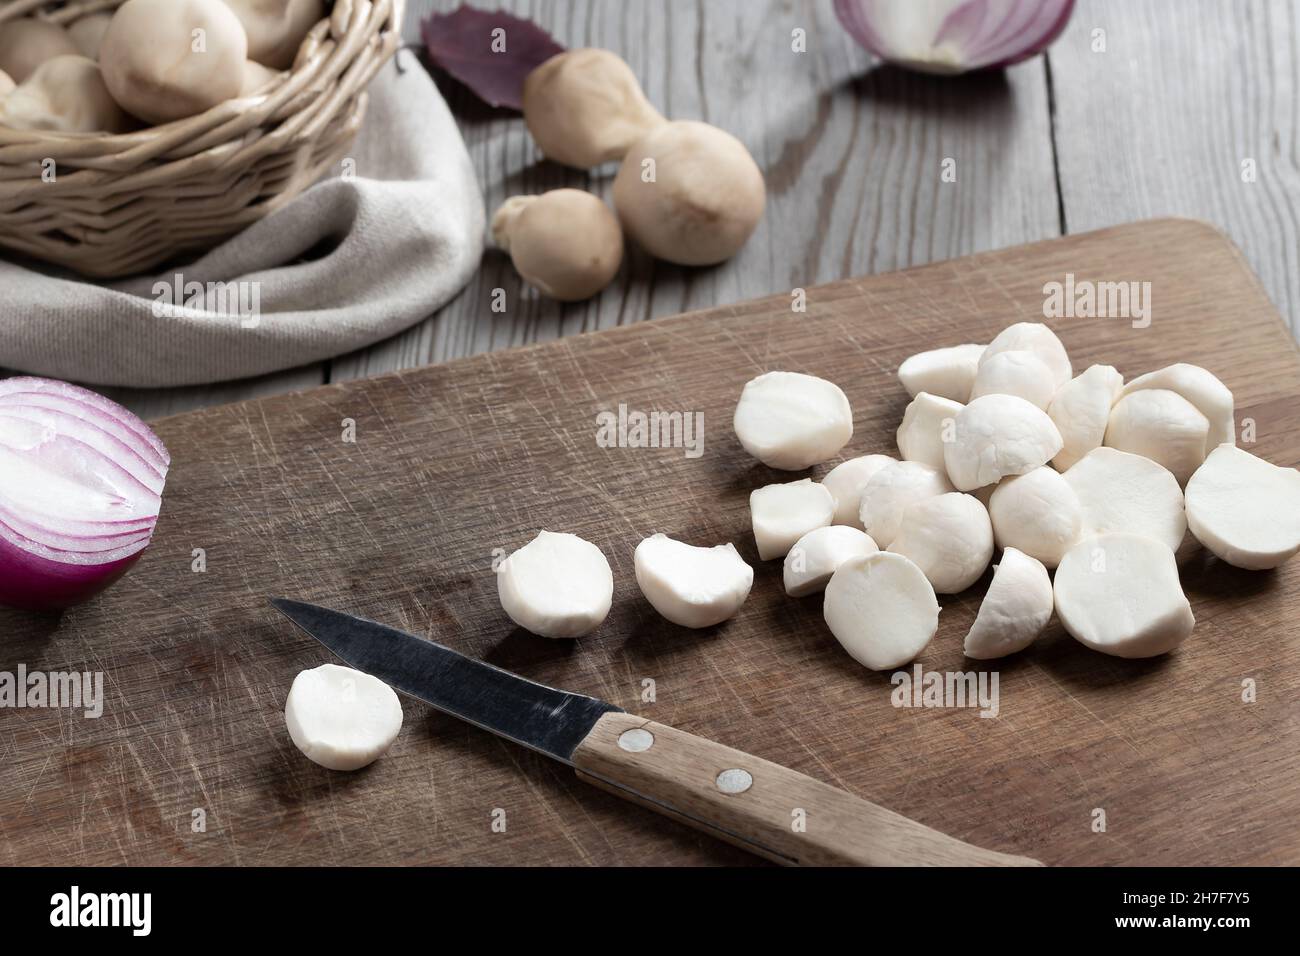 Kochen von essbaren Puffball-Pilzen. Zerschneiden von geschälten Pilzen auf einem Schneidebrett. Stockfoto